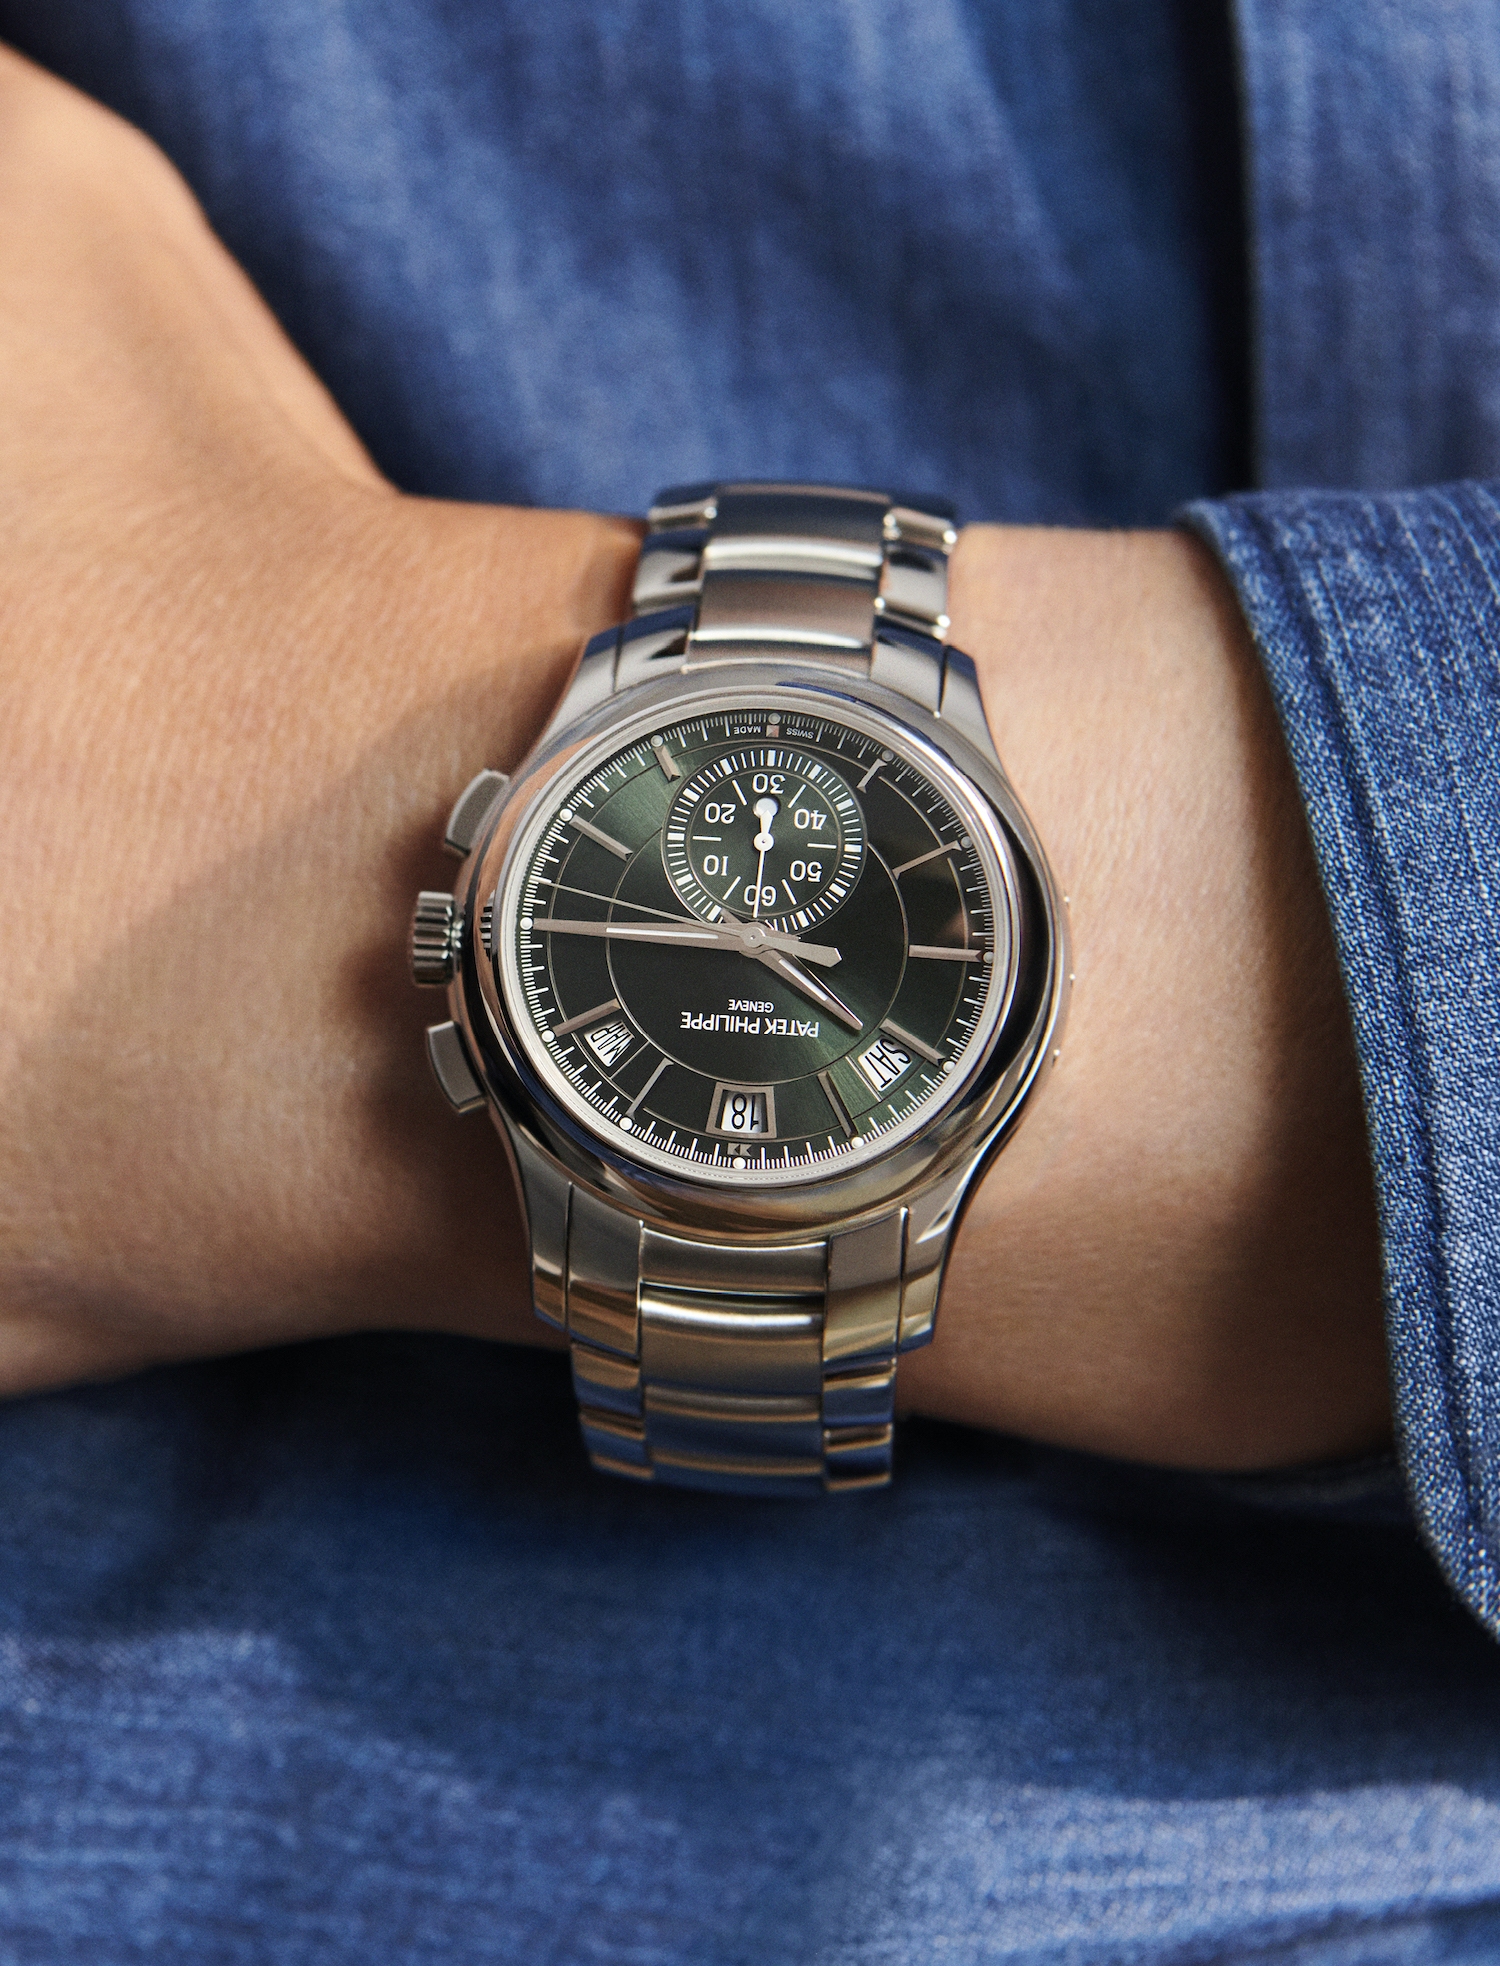 5905/1A-001 藉由鋼製錶鍊與清爽明亮橄欖綠色錶盤帶出大膽卻優雅的都會時髦感。